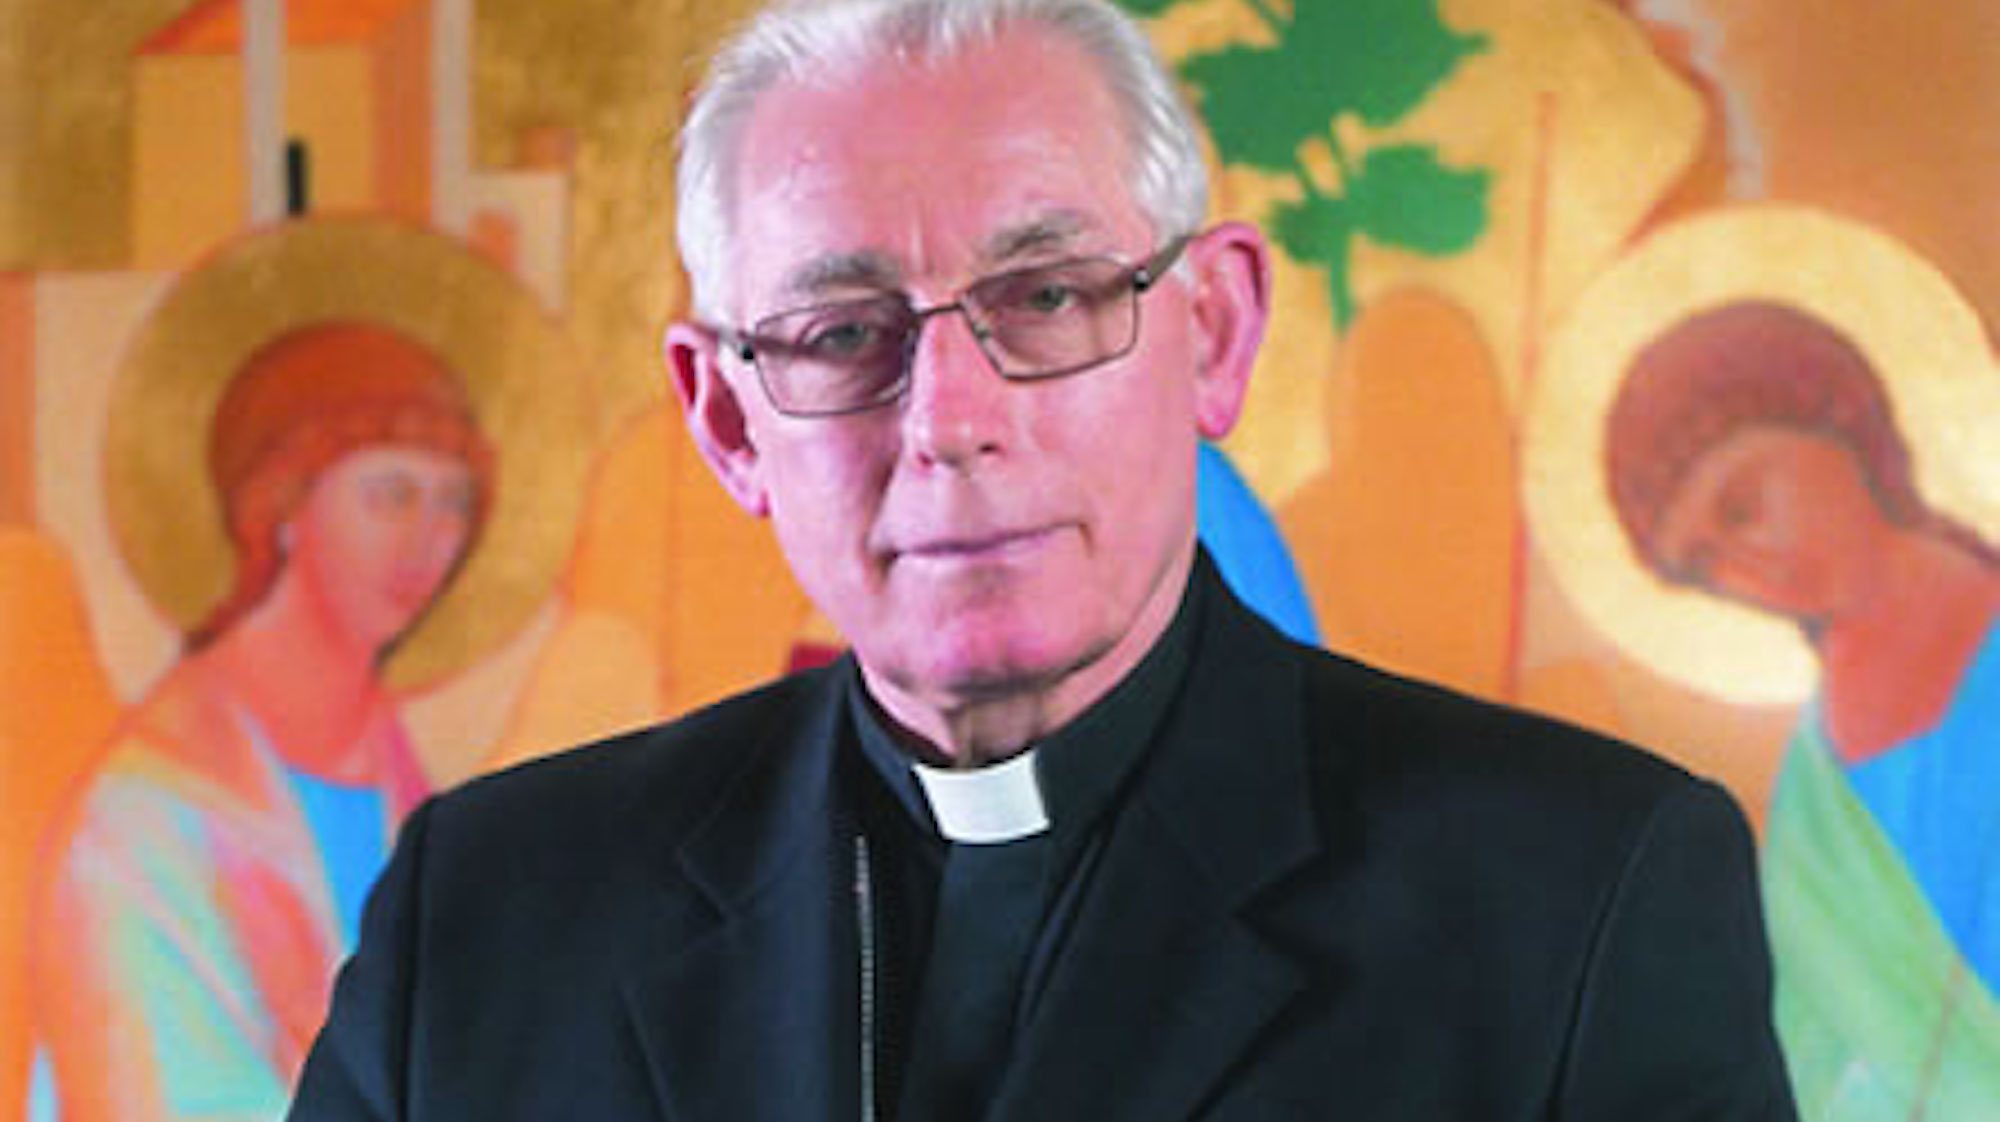 O bispo de Beja, D. João Marcos, foi o único a não responder ao pedido de entrevista da comissão independente